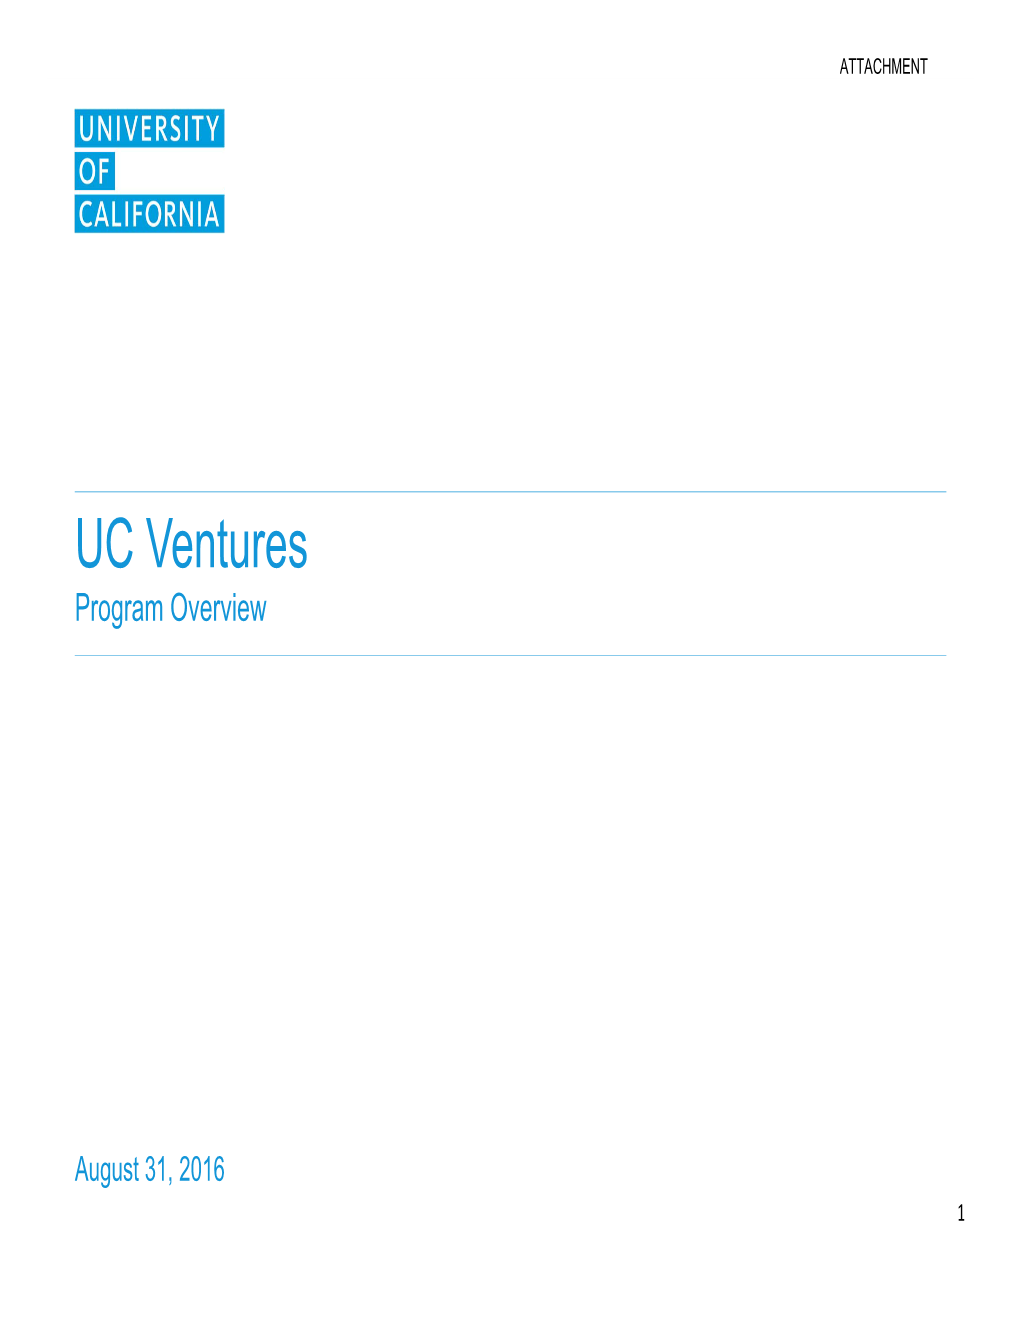 Attachment: UC Ventures Program Overview